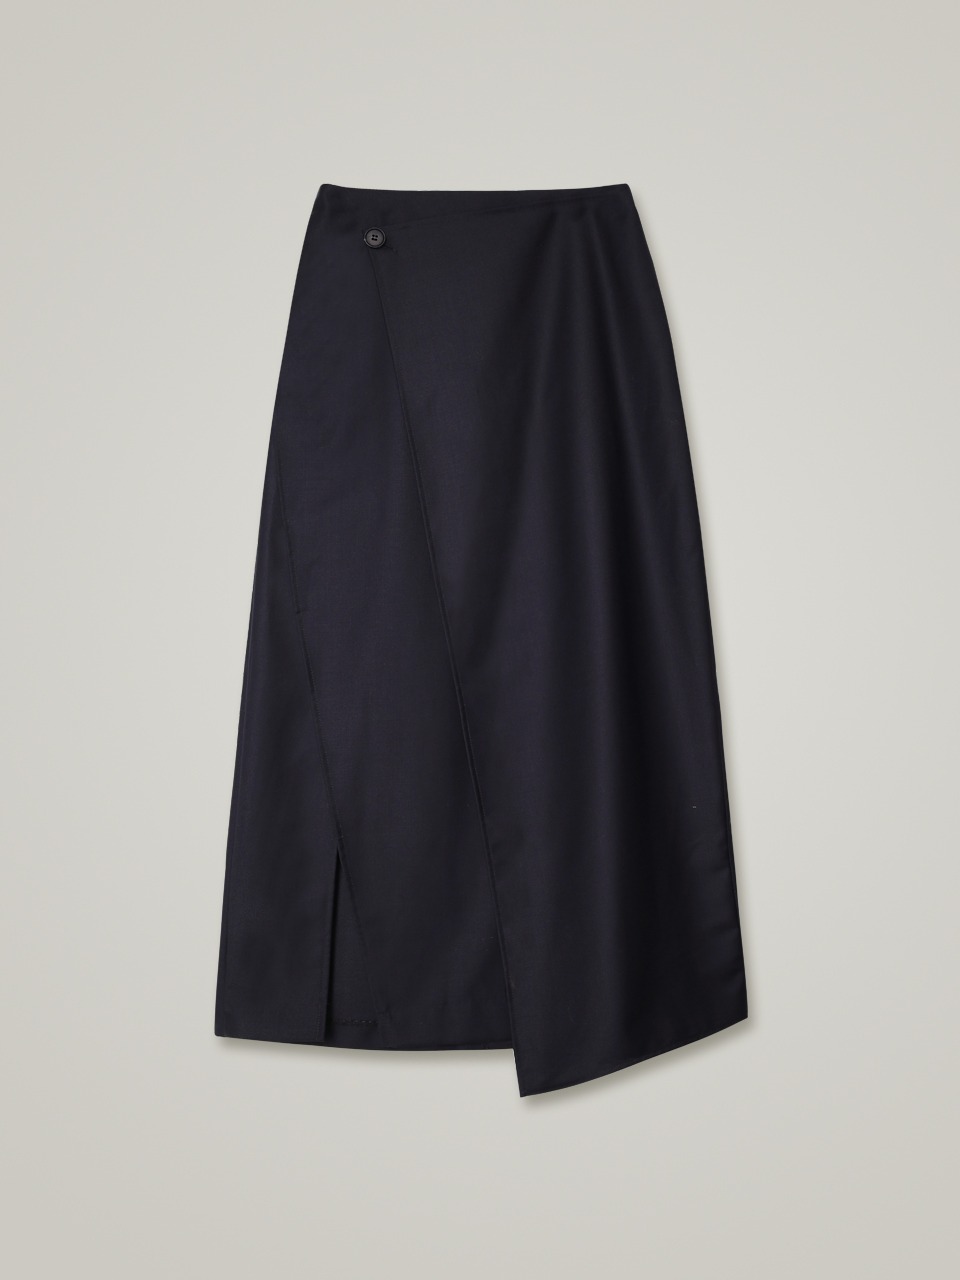 comos 906 diagonal layered skirt (navy)